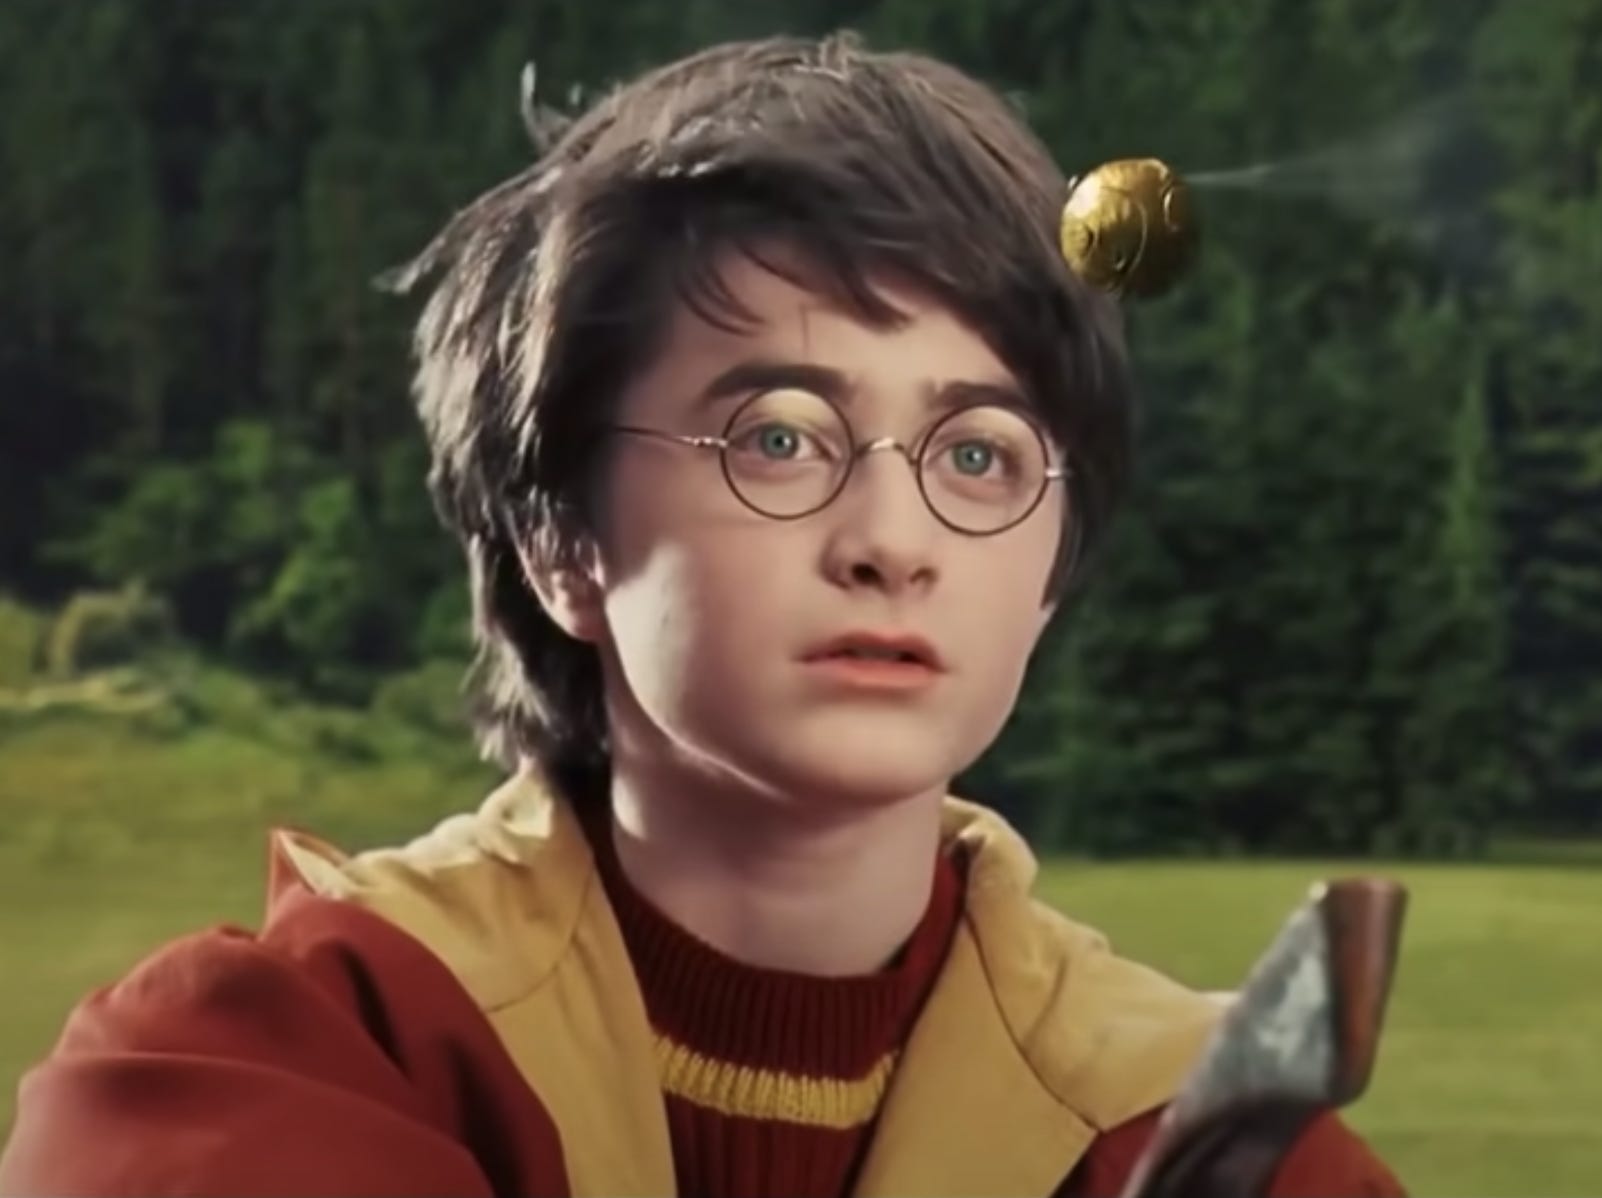 Daniel Radcliffe als Harry in „Harry Potter in der Kammer des Schreckens“.